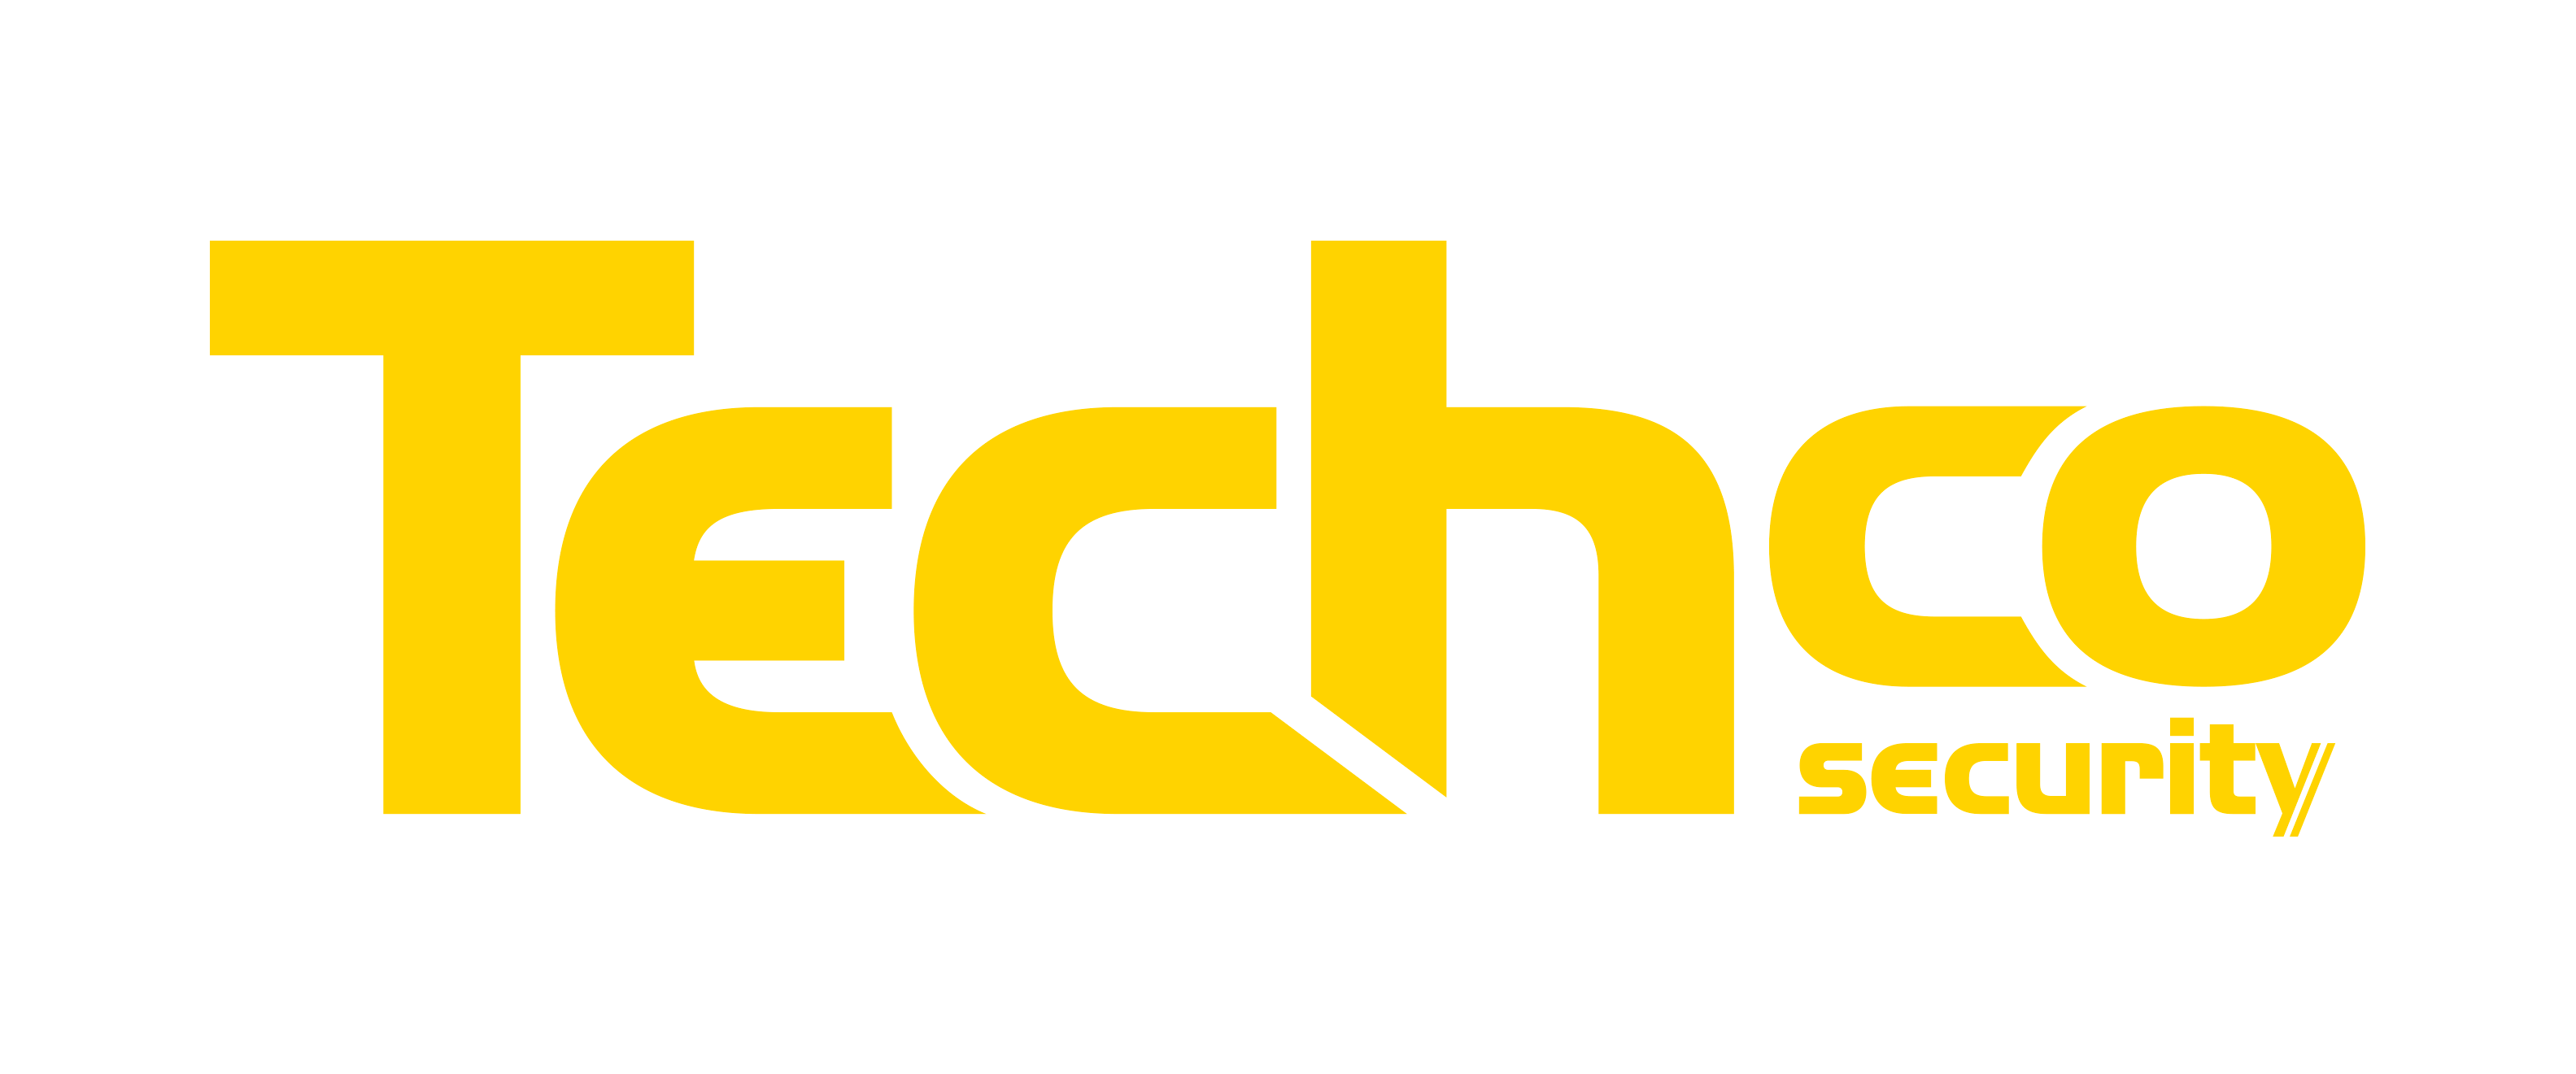 Logo_Techco